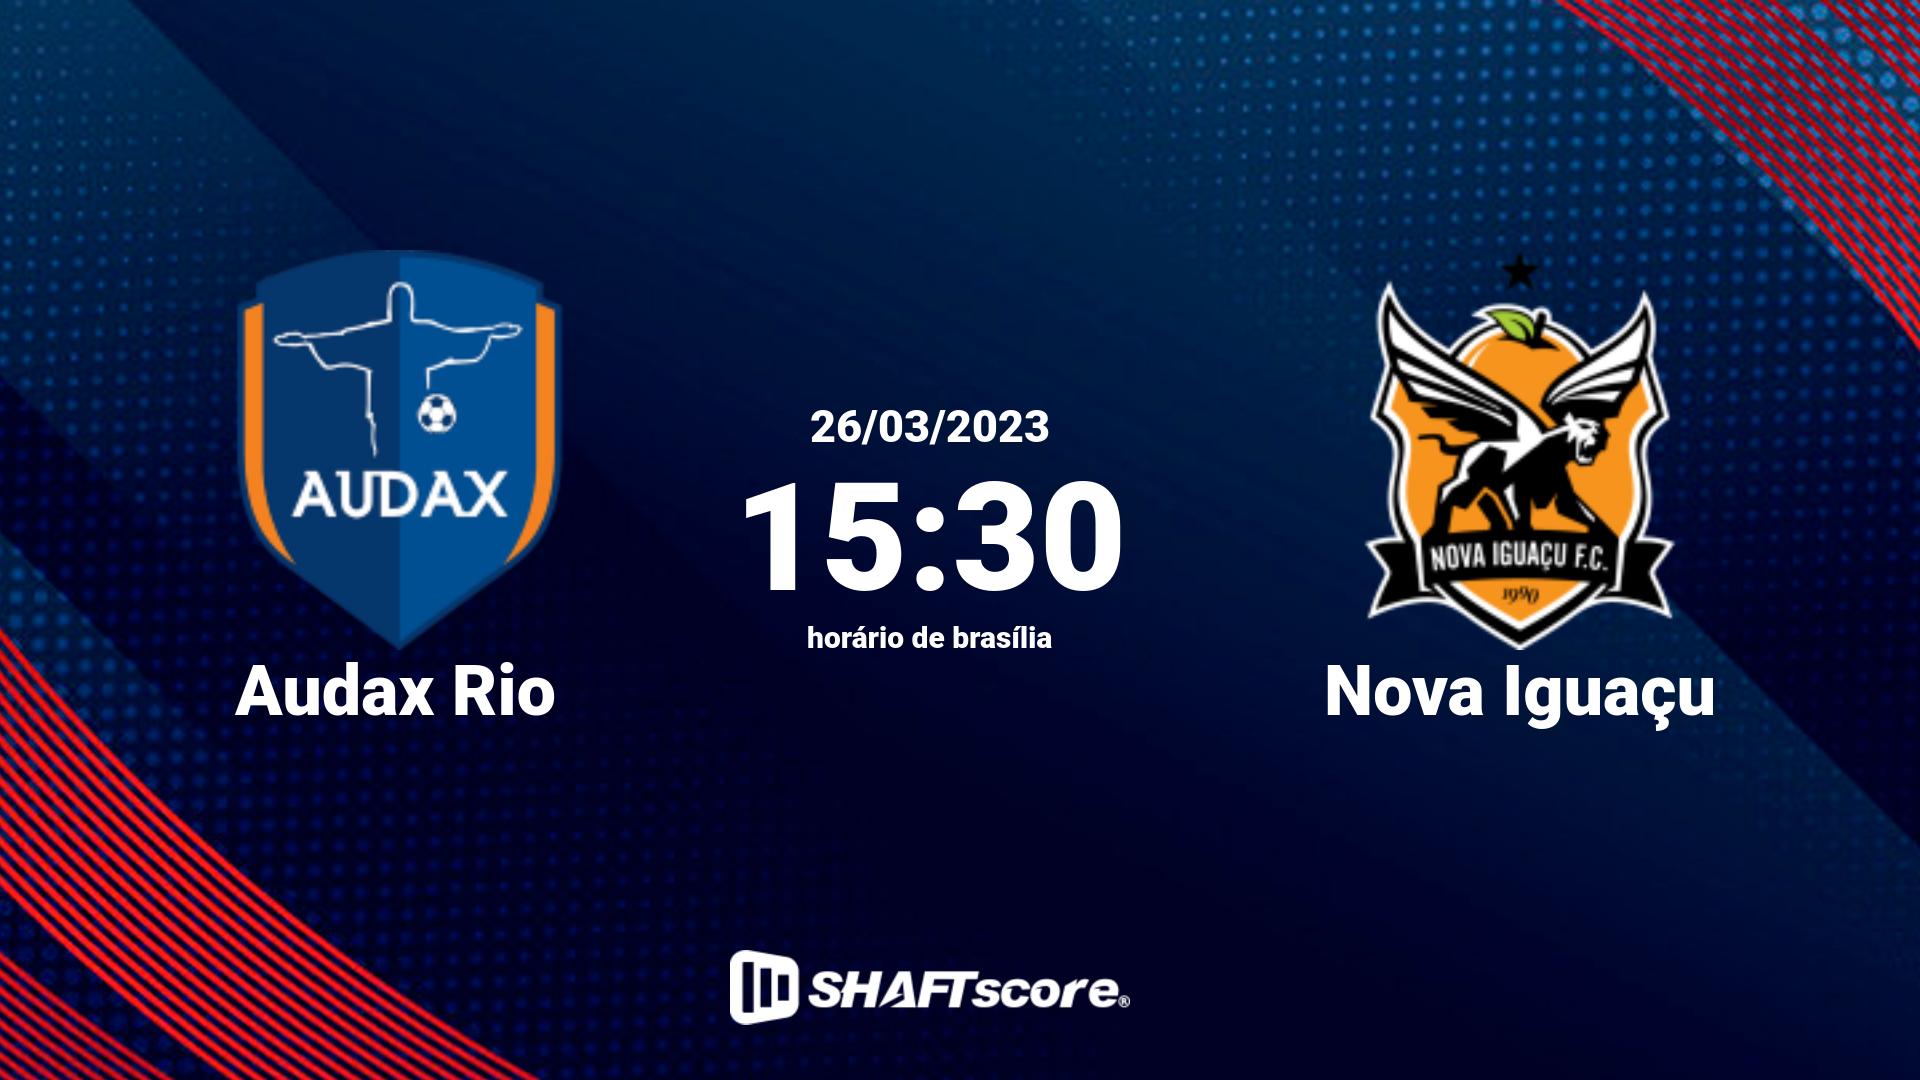 Estatísticas do jogo Audax Rio vs Nova Iguaçu 26.03 15:30